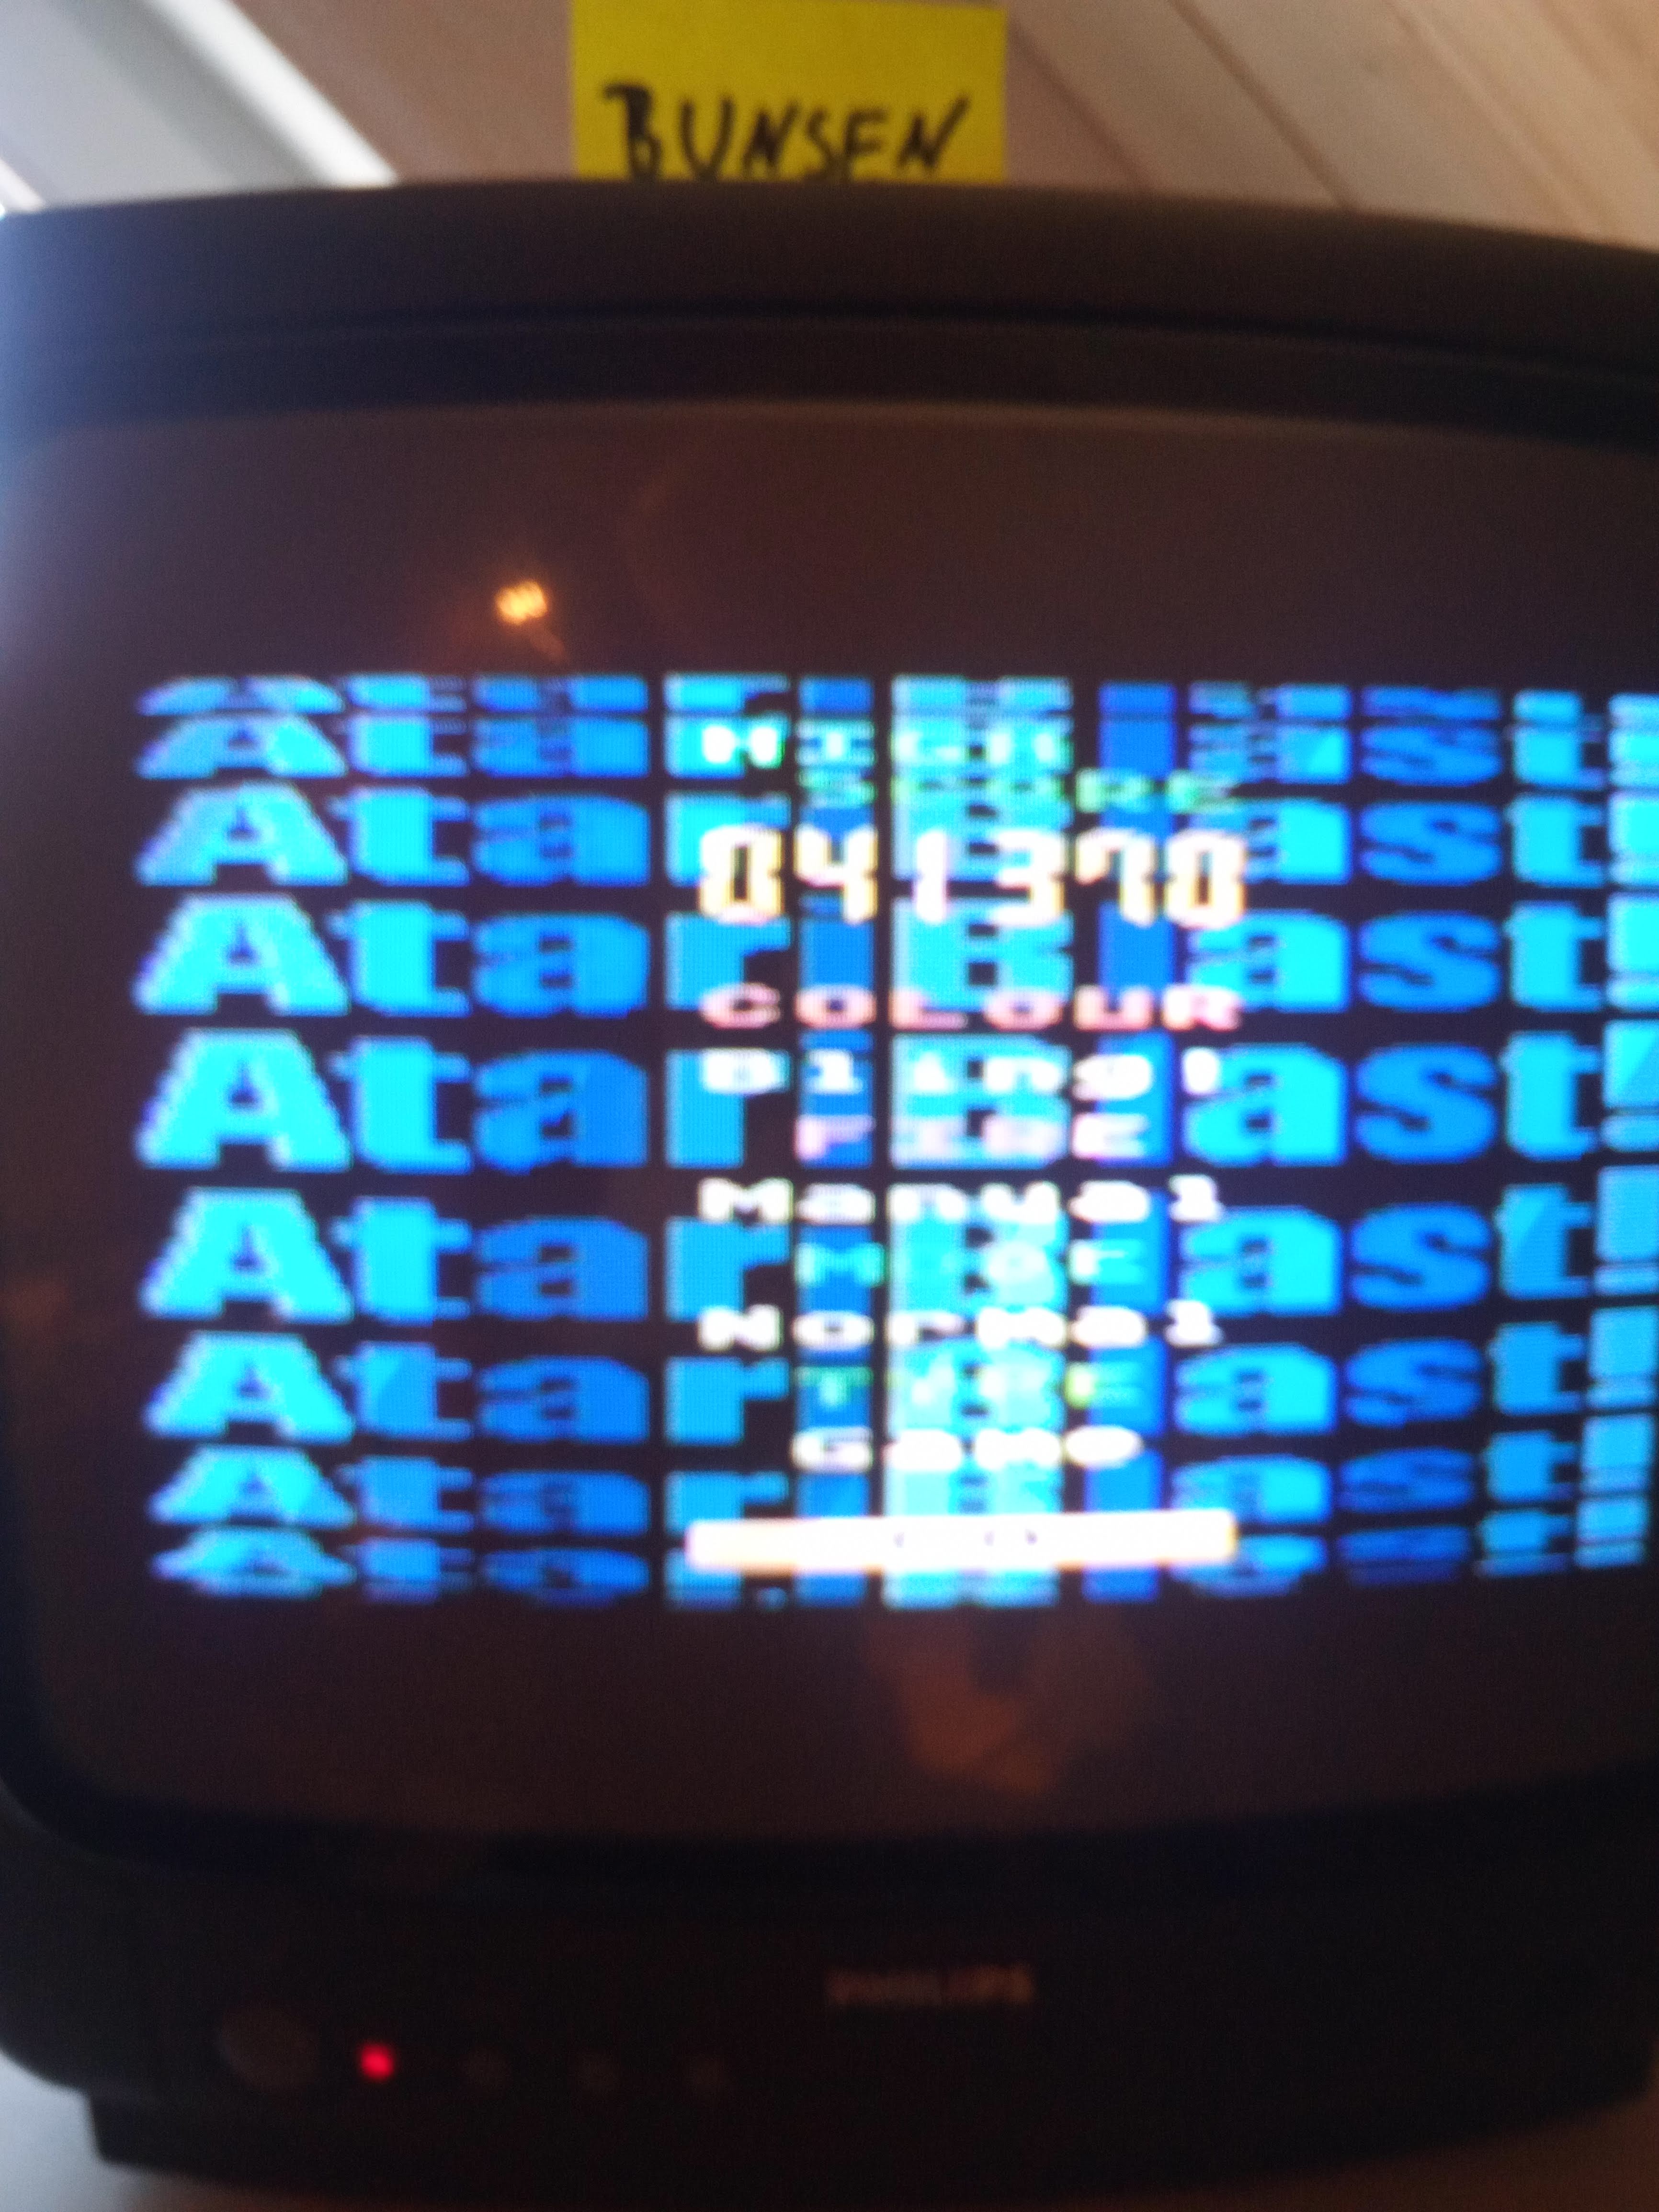 Bunsen: Atari Blast! [Normal] (Atari 400/800/XL/XE) 41,370 points on 2019-02-24 03:18:59